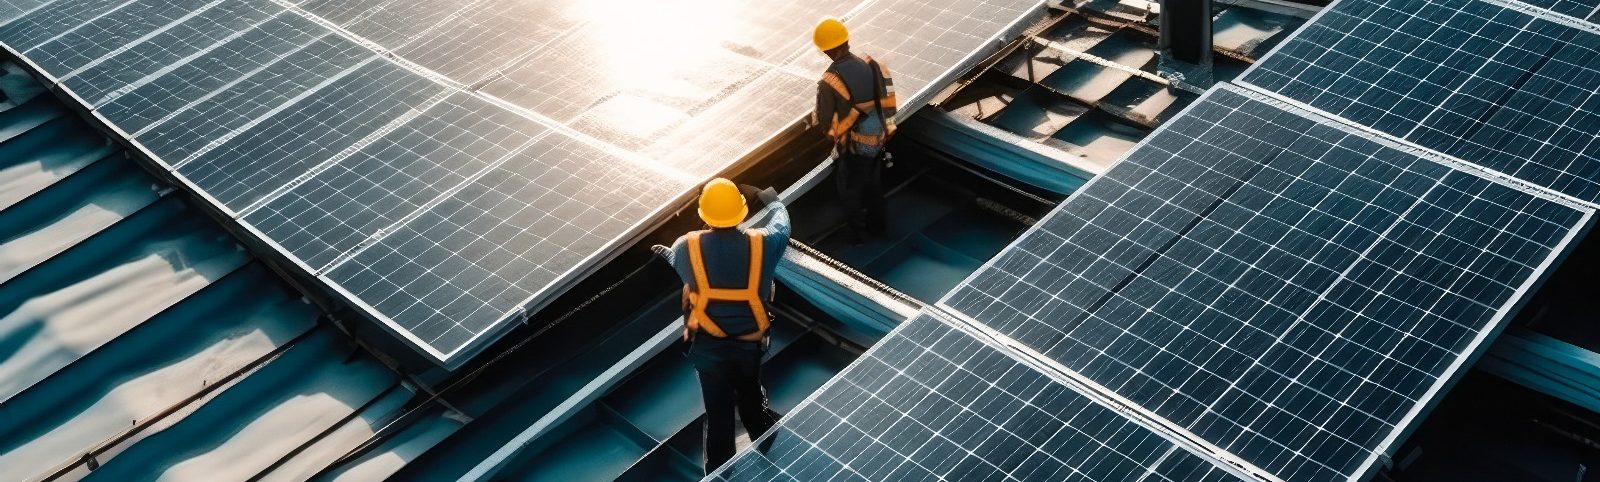 installation photovoltaïque sur toits existants